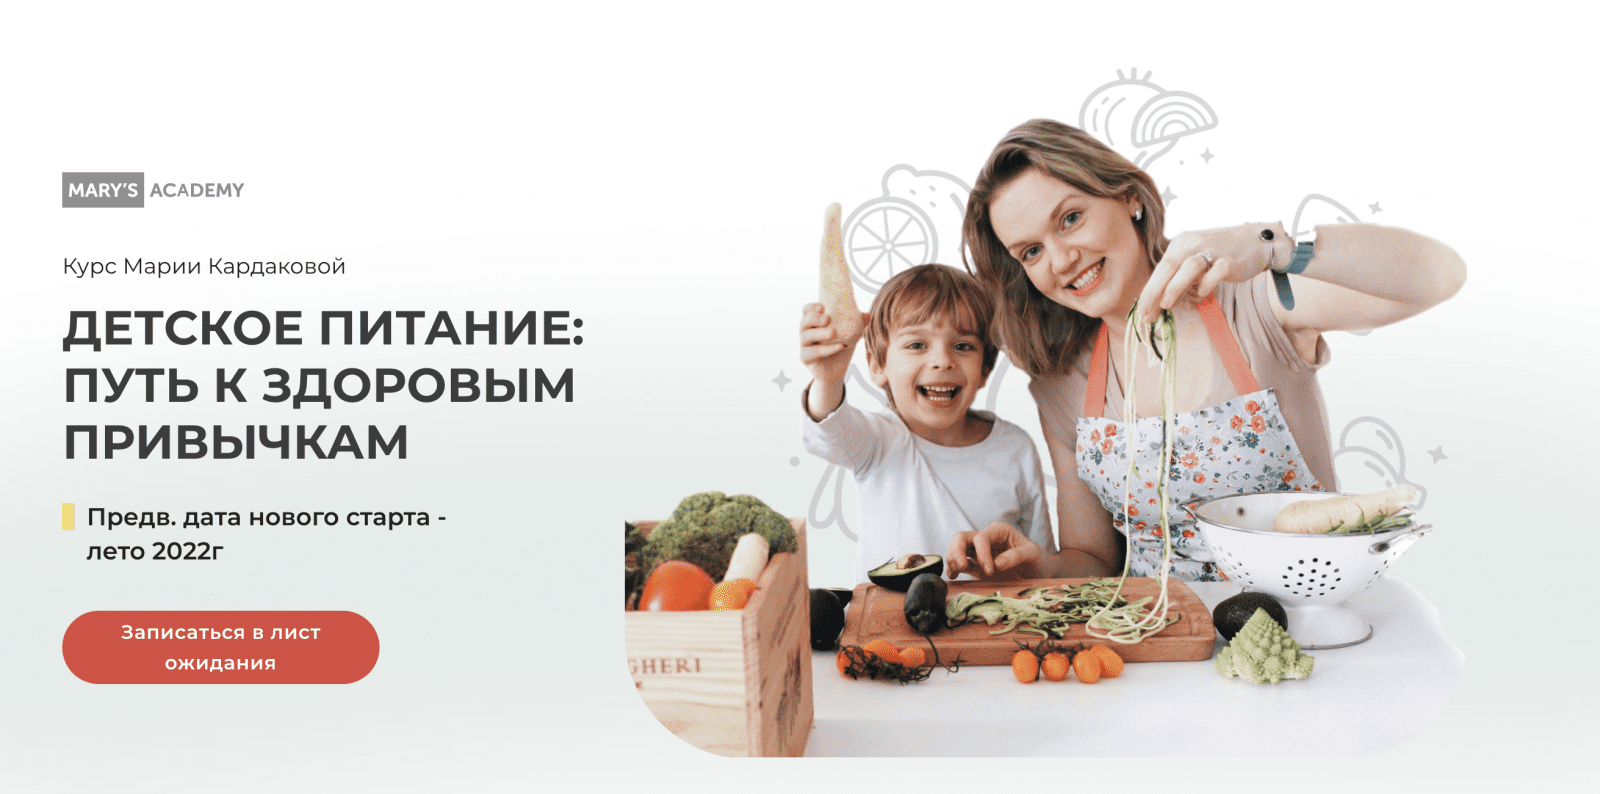 Изображение [Мария Кардакова] Детское питание 2.0: путь к здоровым привычкам (2022) в посте 259086